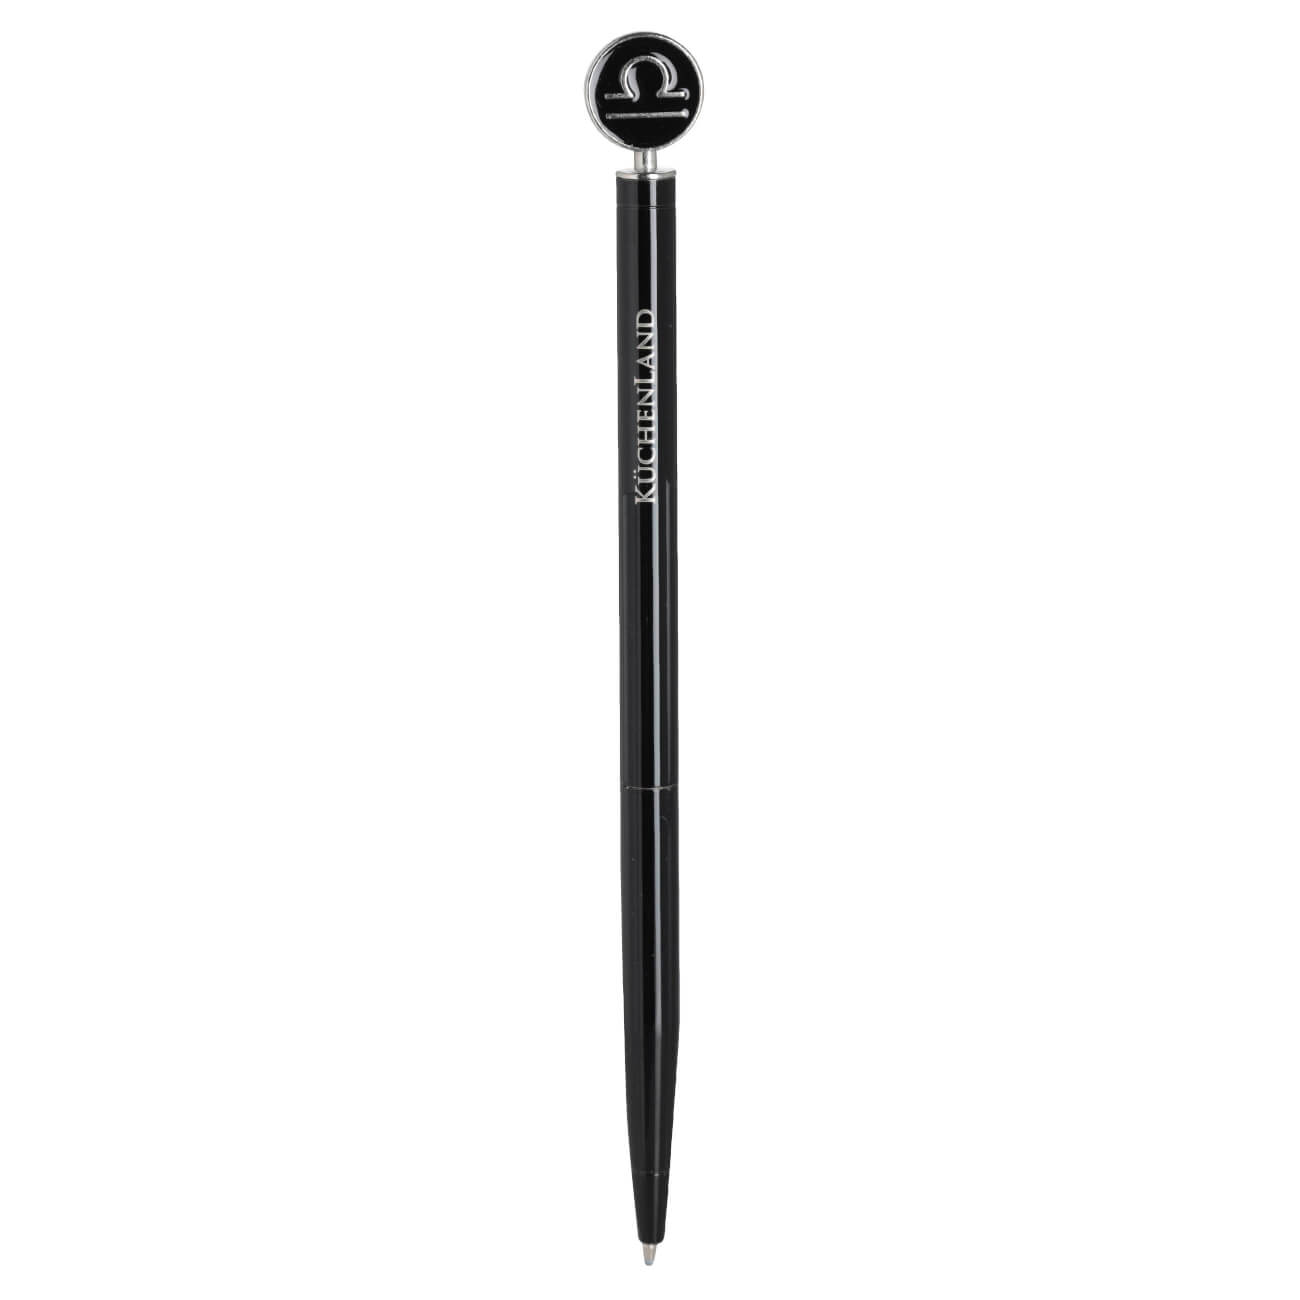 Ручка шариковая, 15 см, с фигуркой, сталь, черно-серебристая, Весы, Zodiac